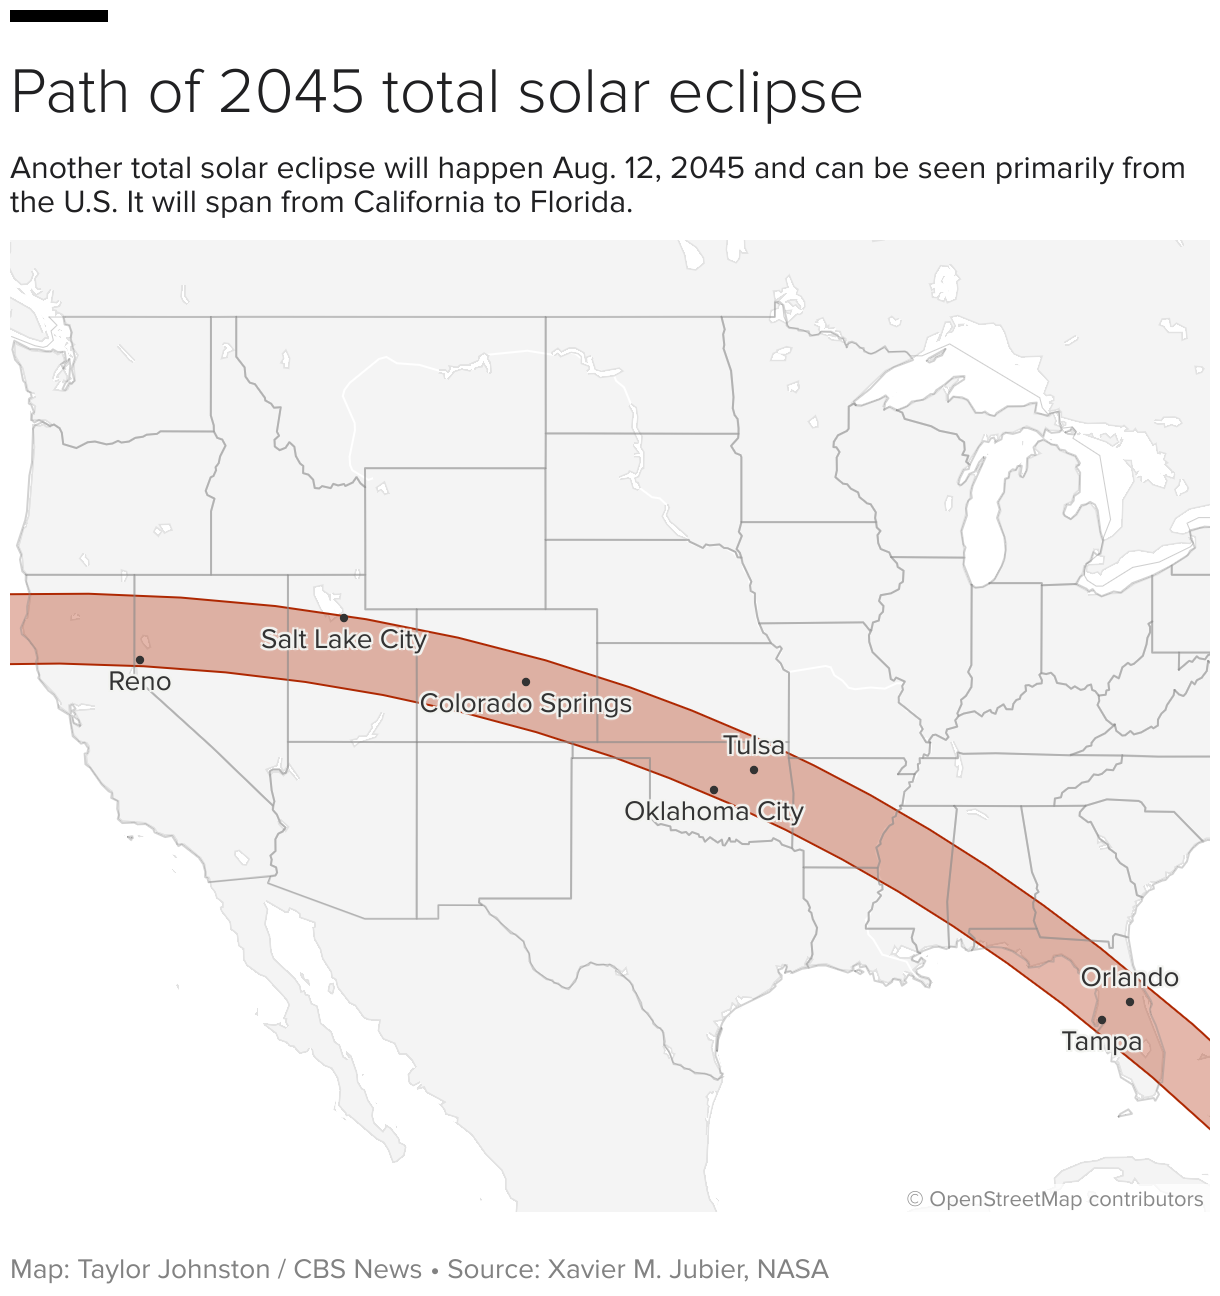 ریاستہائے متحدہ کا نقشہ 2045 کے سورج گرہن کا راستہ دکھا رہا ہے۔